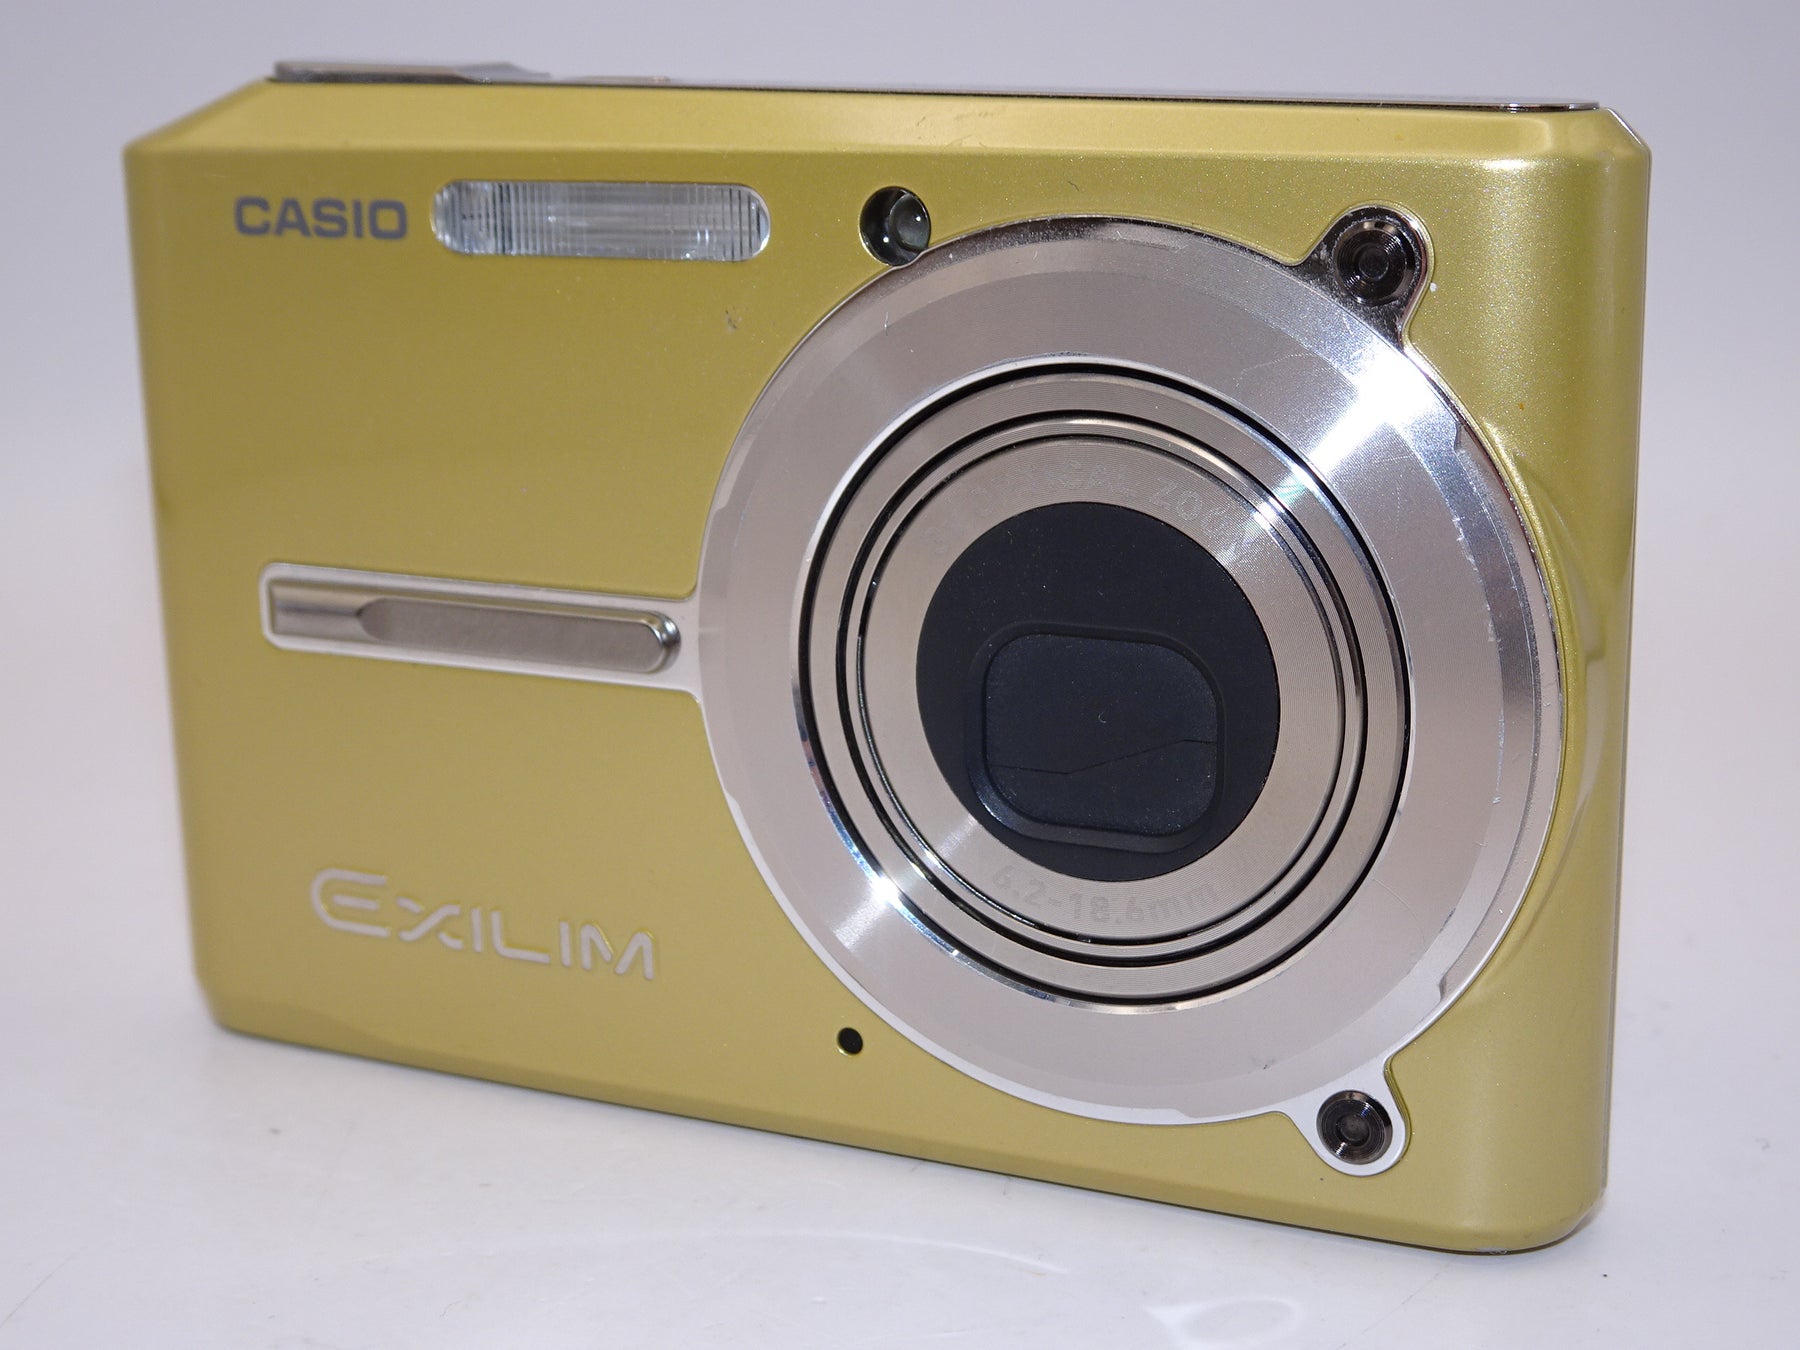 CASIO EXILIM EX-S600無言購入→○ - デジタルカメラ